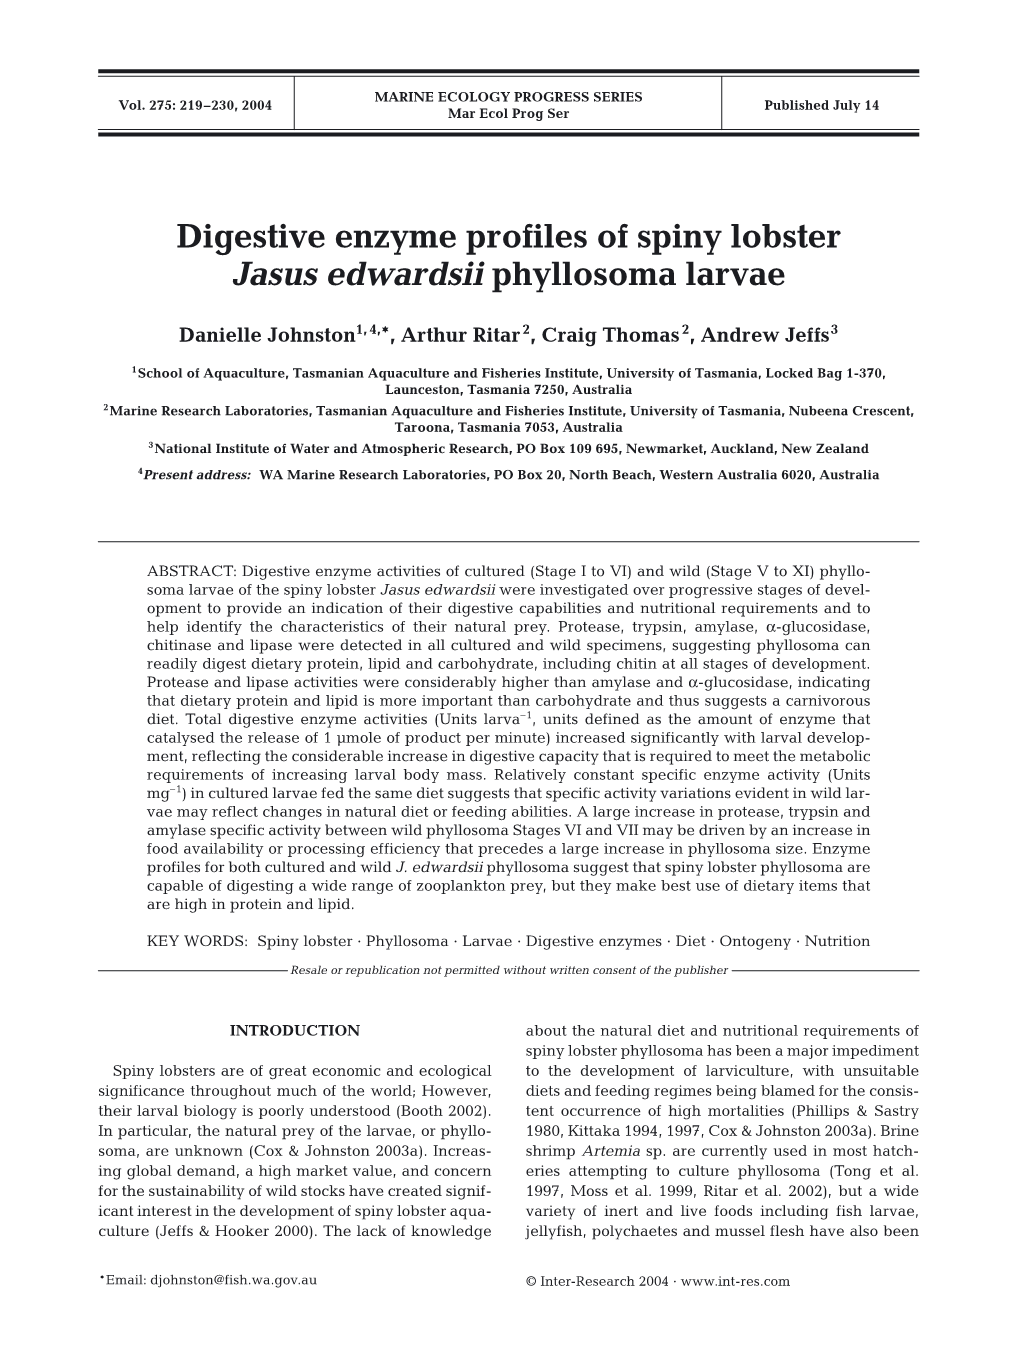 Digestive Enzyme Profiles of Spiny Lobster Jasus Edwardsii Phyllosoma Larvae